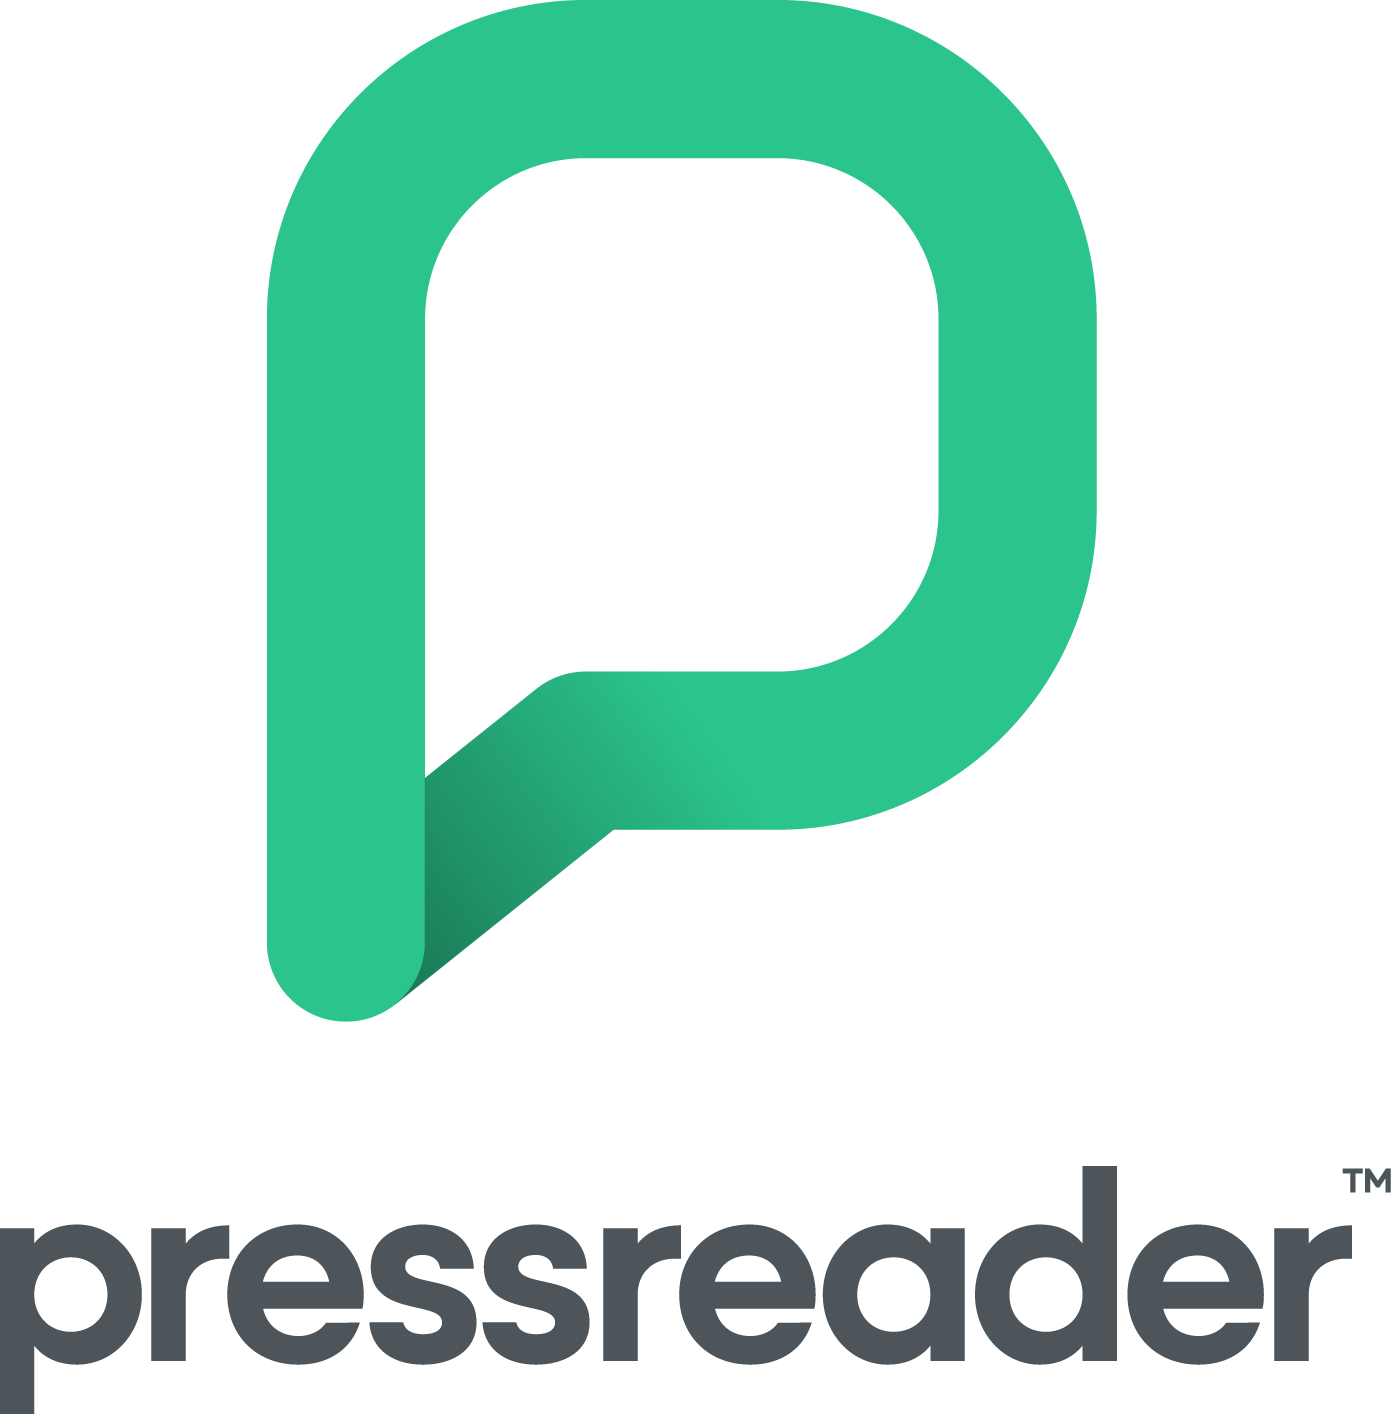 pressreader-logo-stacked.png